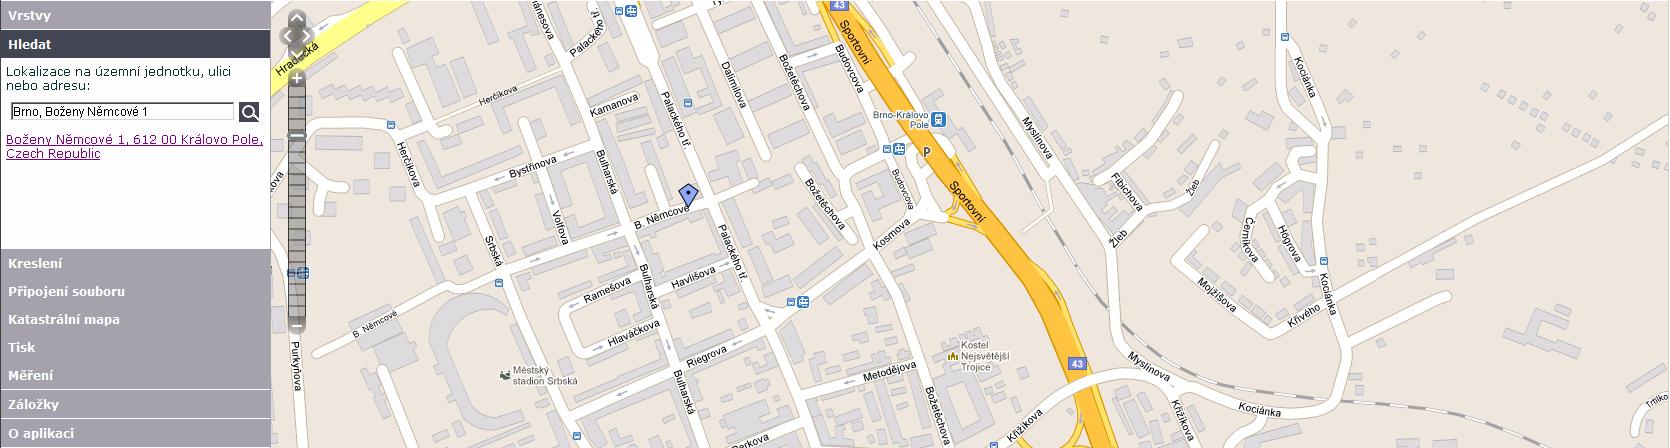 Hledání, Kreslení Hledání Je určeno k provedení lokalizace územní jednotky (ulice, nebo adresy) v mapě.